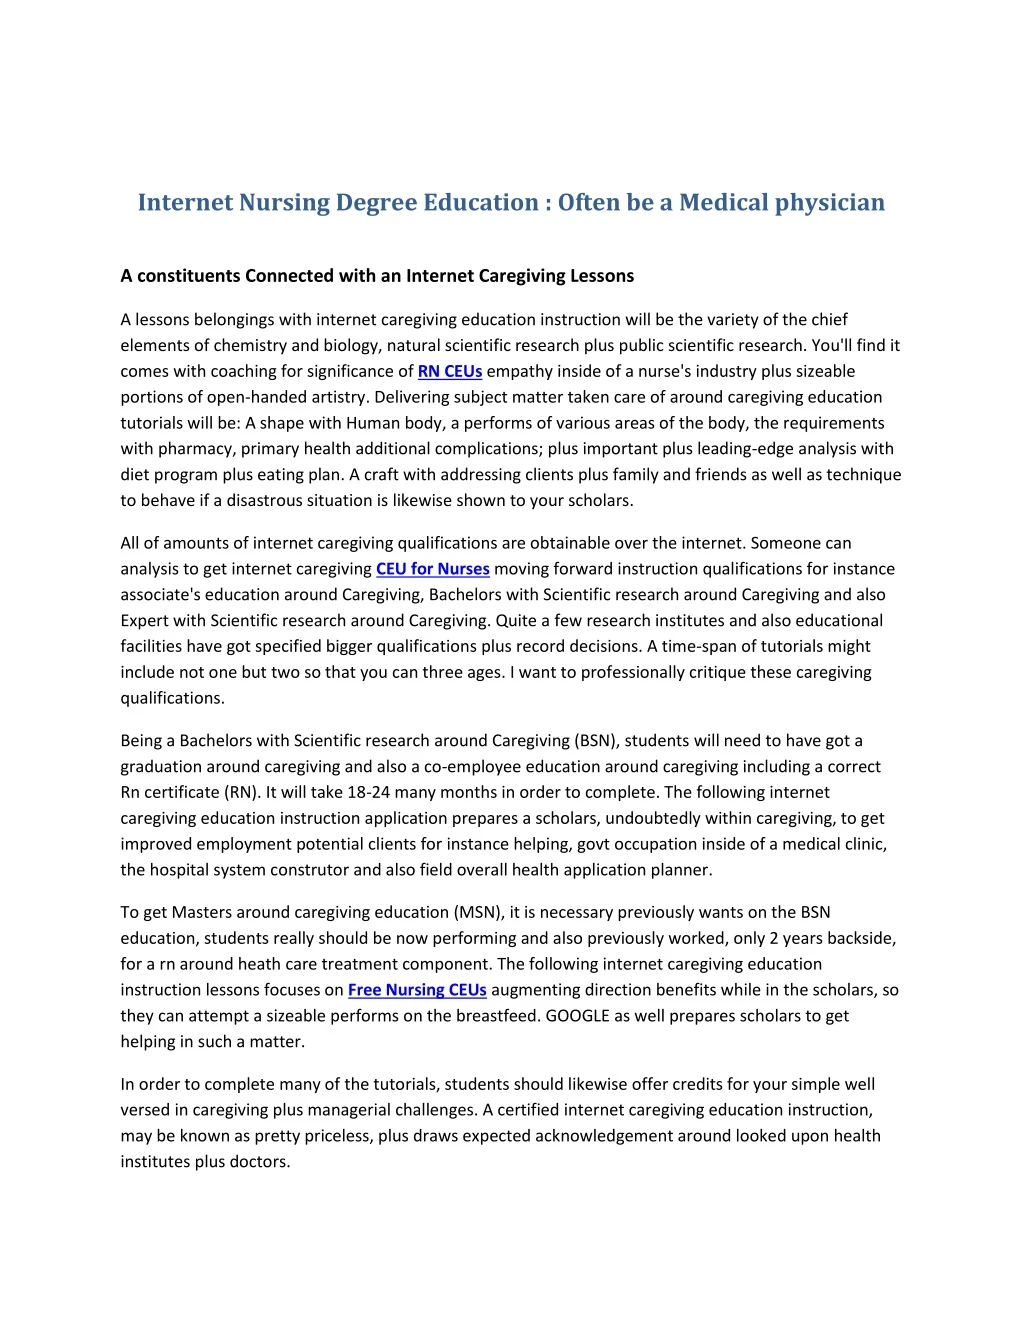 internet nursing degree education often